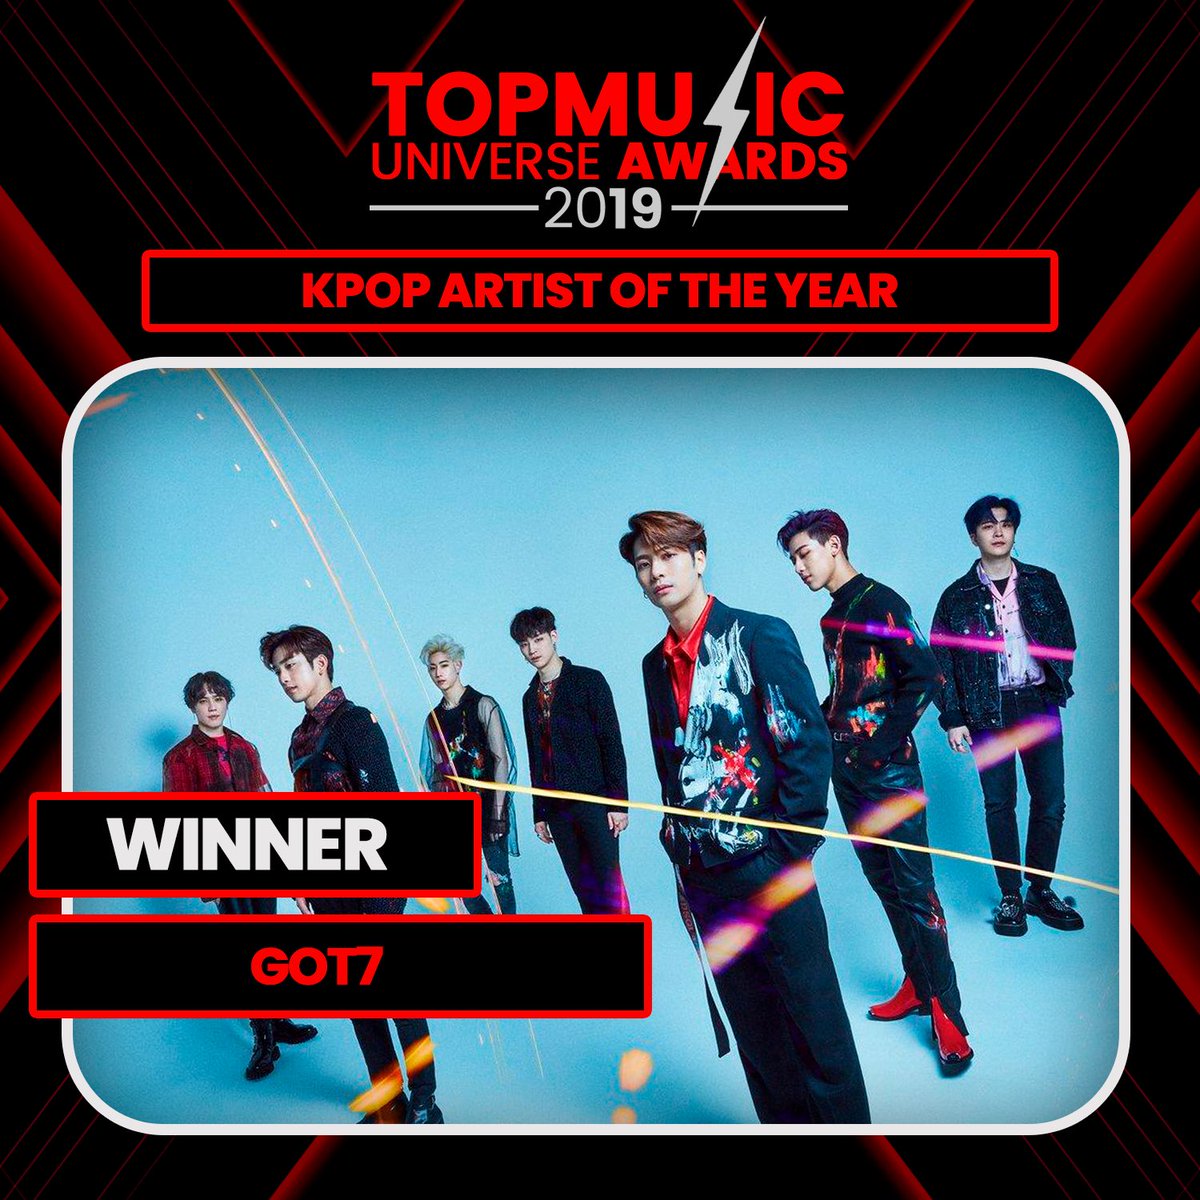  2019 GDA - Disc Bonsang 2019 SMA - Bonsang Award 2019 Top Music Universe Award - Kpop Artist of The Year 2019 Joox Thailand Music Award - Kpop Artist of The Year